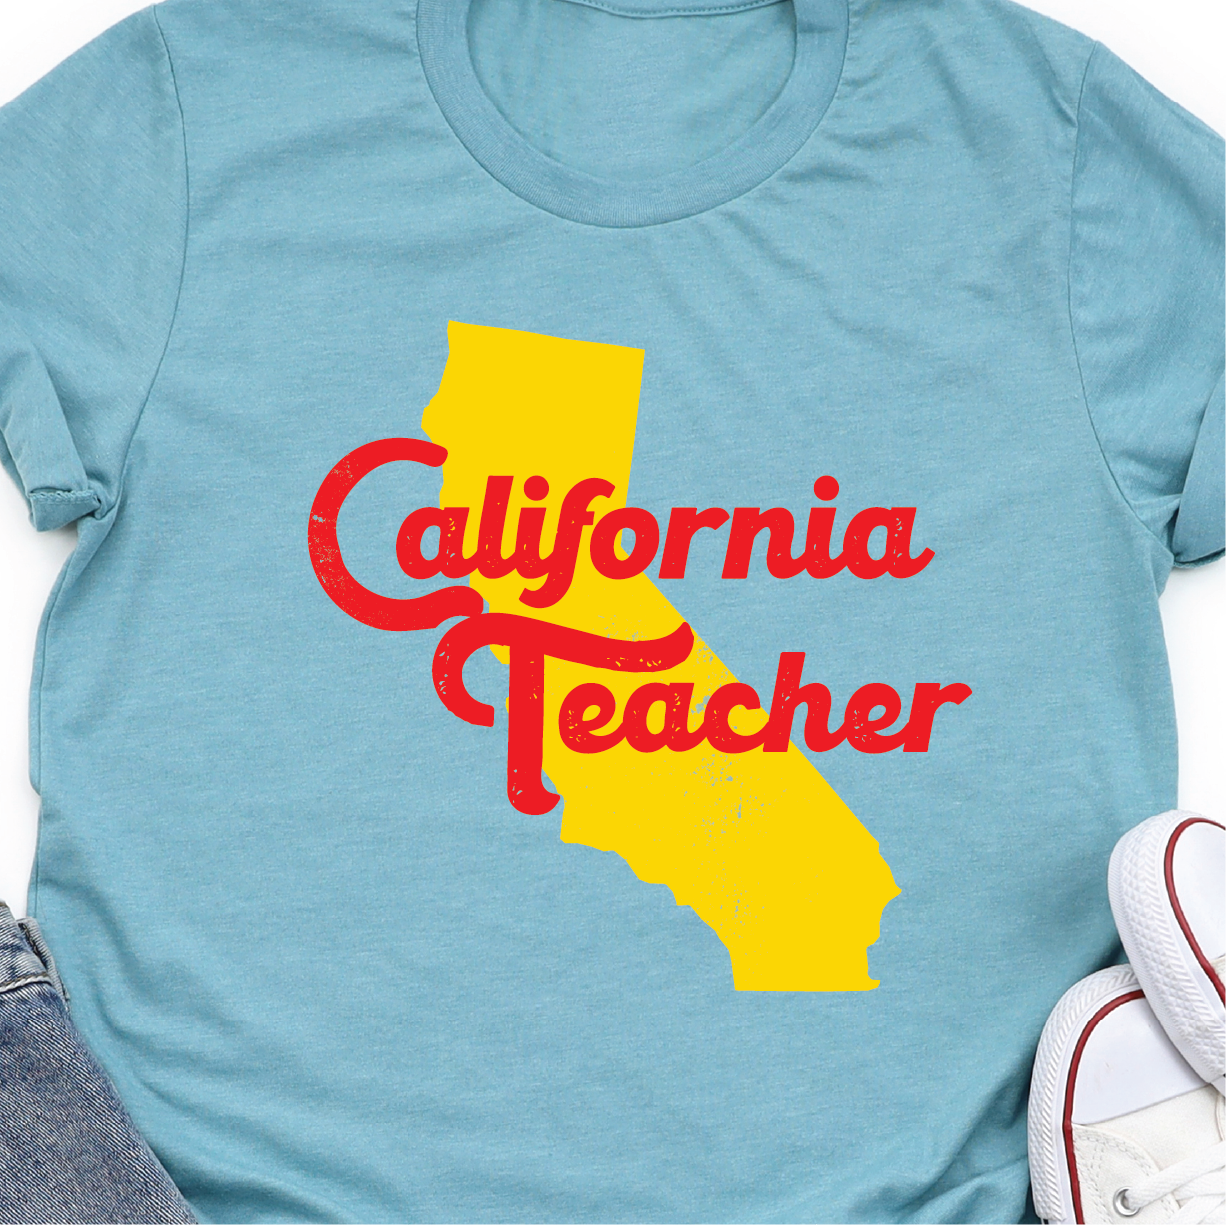 "California Teacher" - Unisex T-shirt